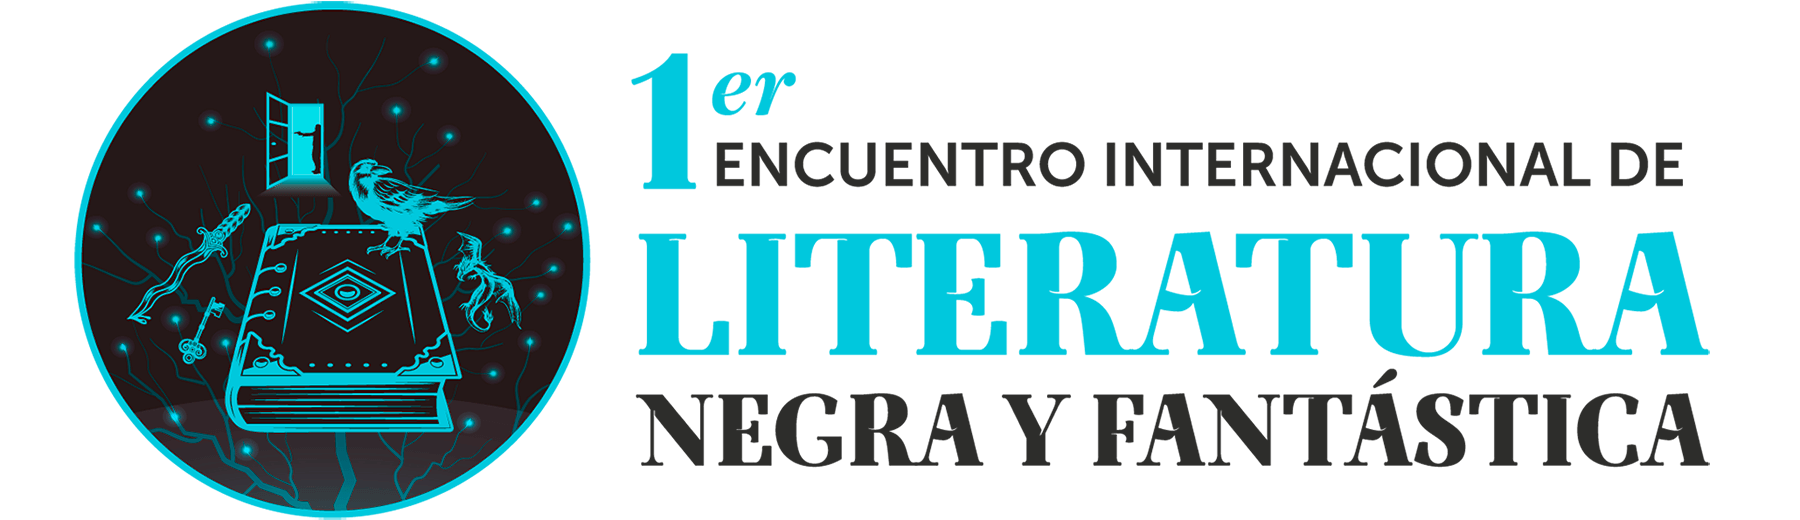 1er Encuentro Internacional Literatura Negra y Fantástica, Sábado 26 de junio de 2021